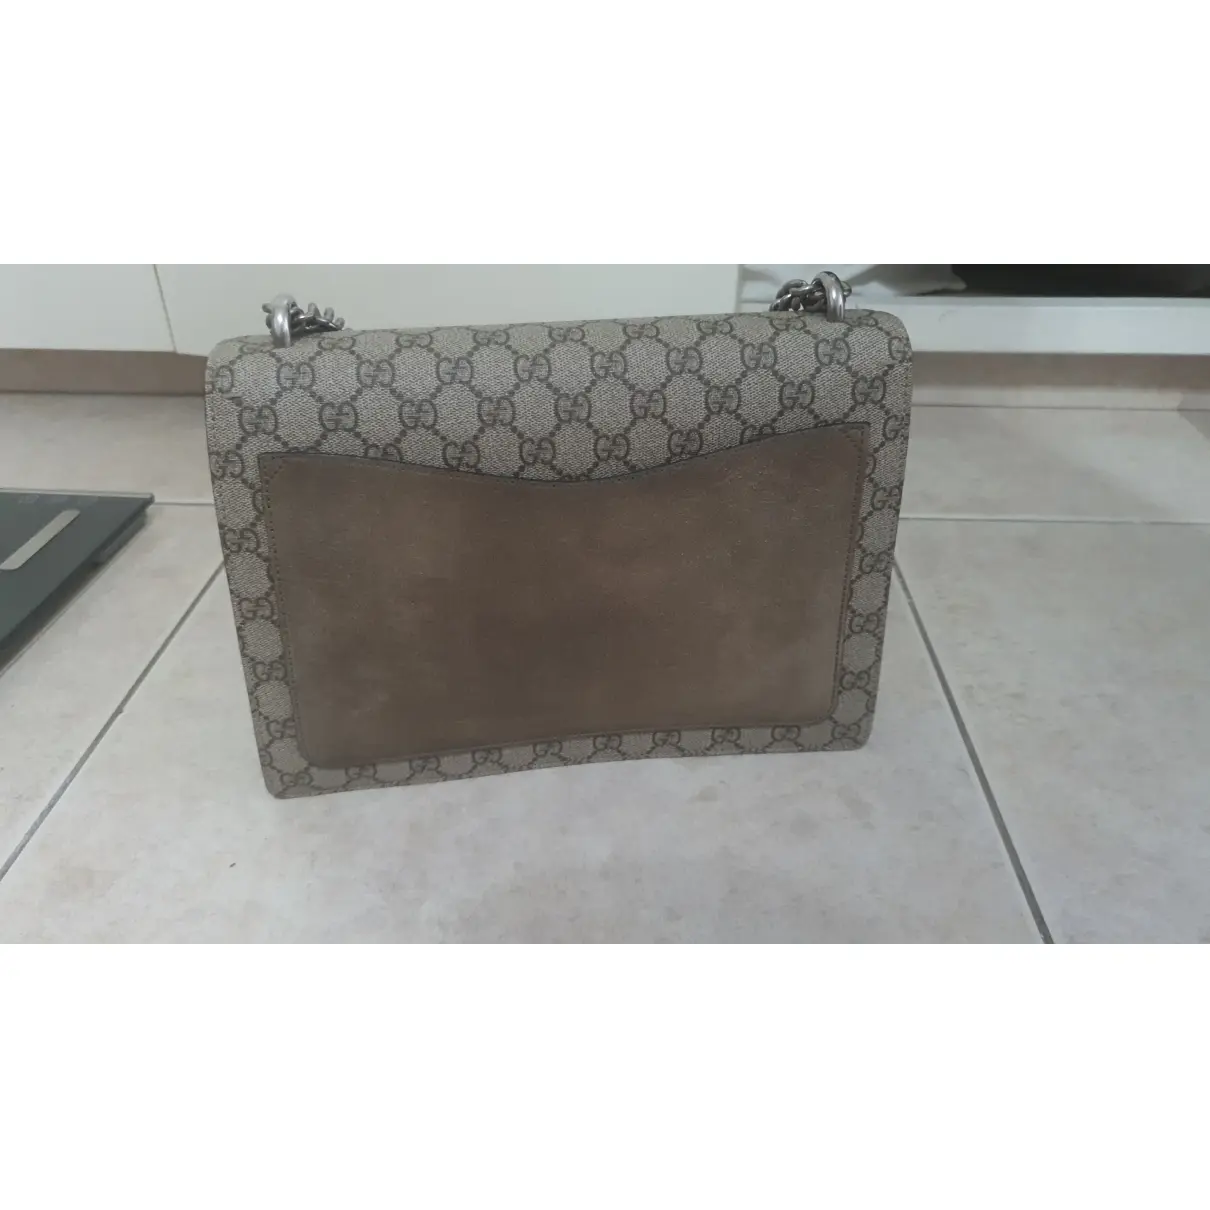 Buy Gucci Dionysus cloth handbag online